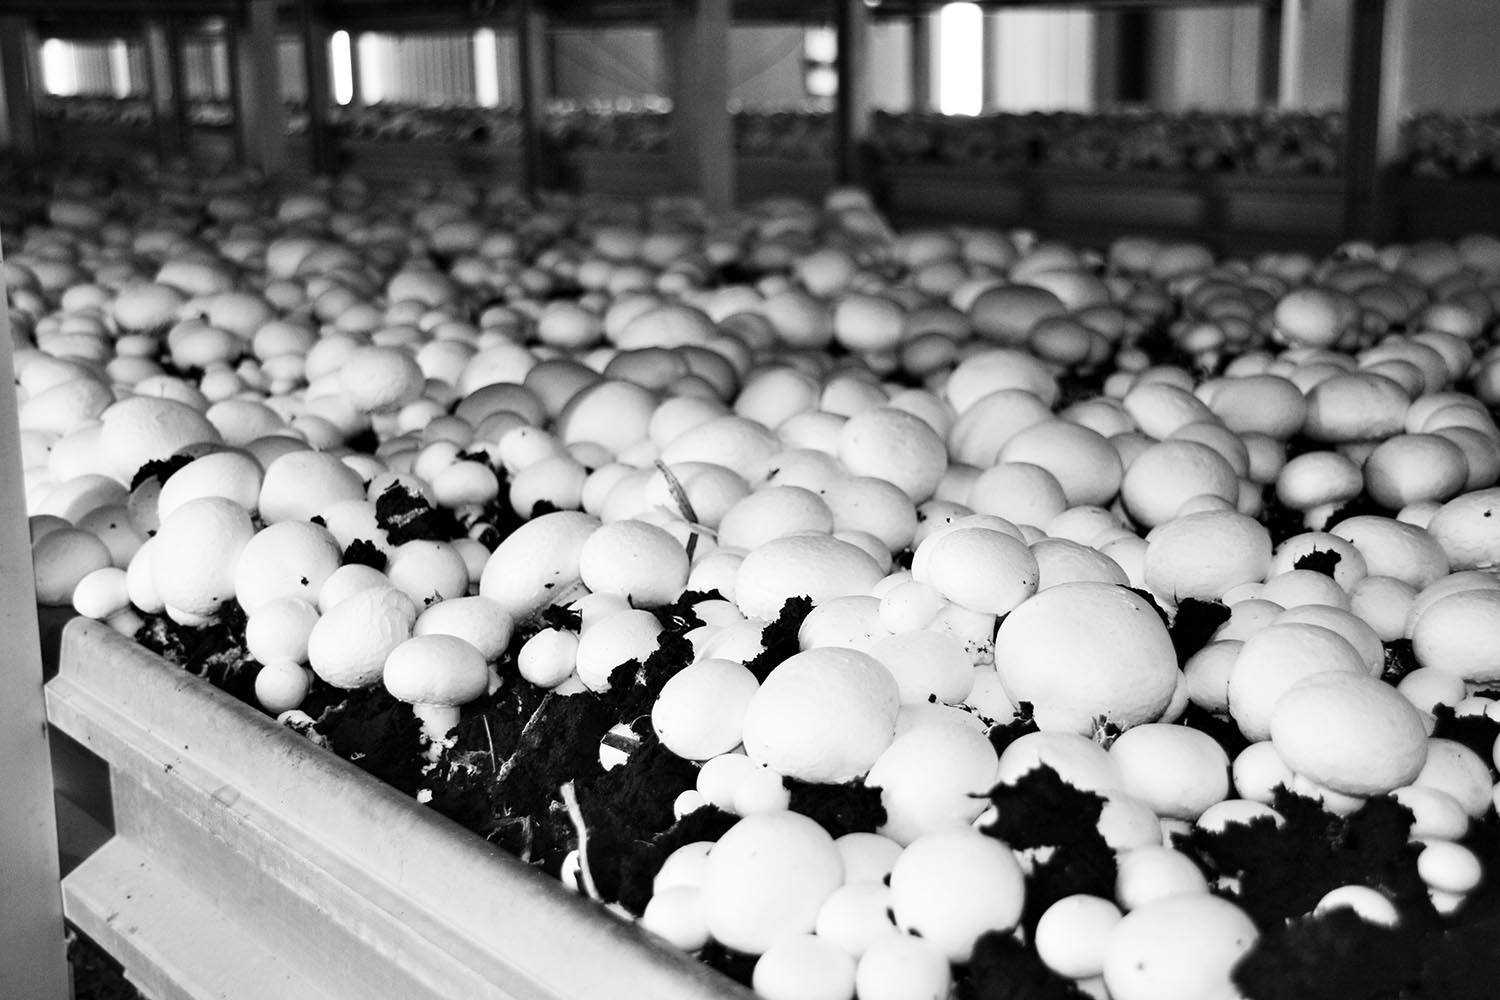 Готовый бизнес-план по выращиванию и продаже грибов — актуальность бизнеса, обзор рынка сбыта, возможные риски и гарантии